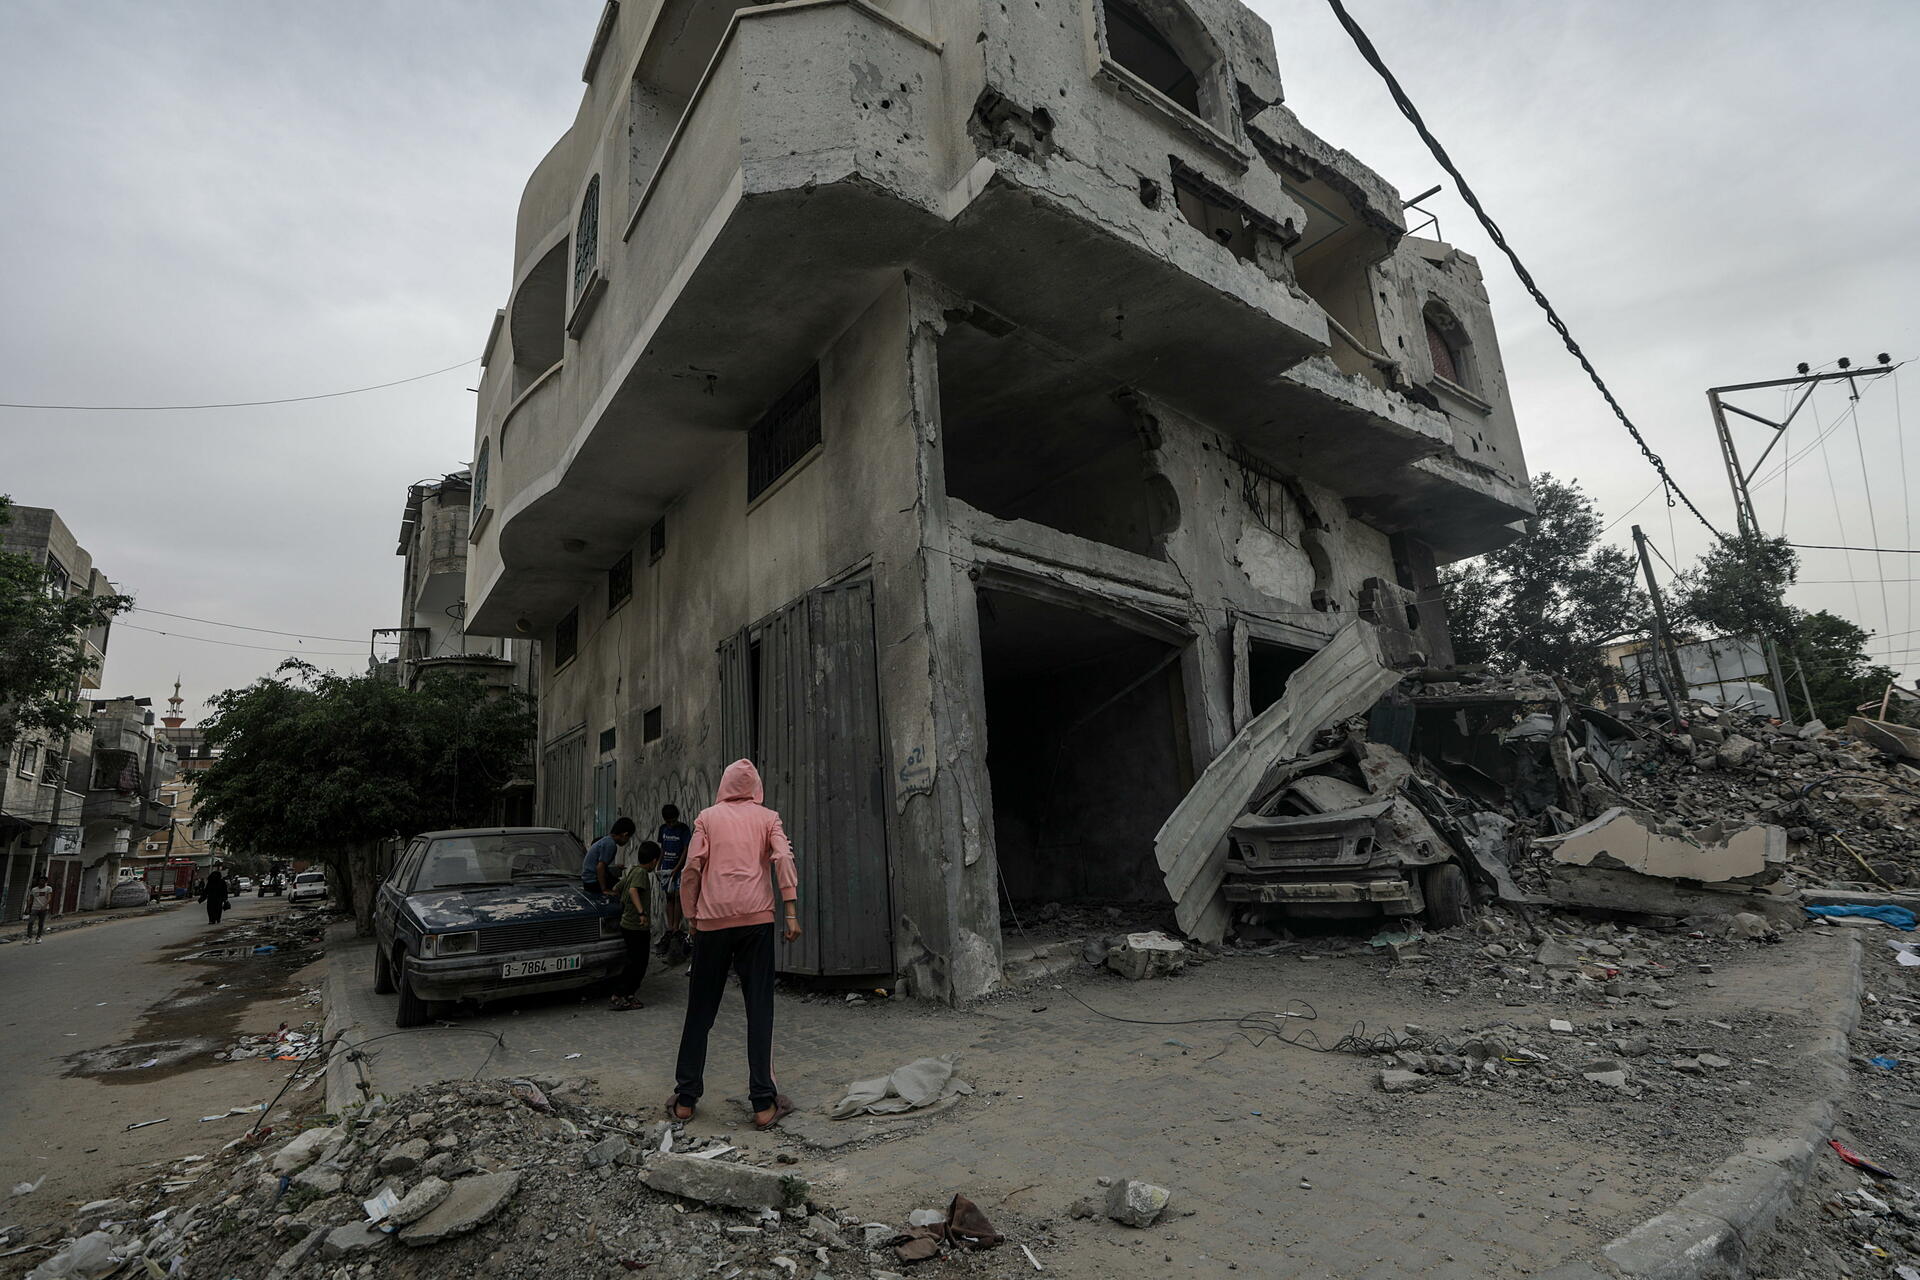 Situación en Gaza ha empeorado desde denuncia por genocidio, alerta Francesca Albanese. Noticias en tiempo real